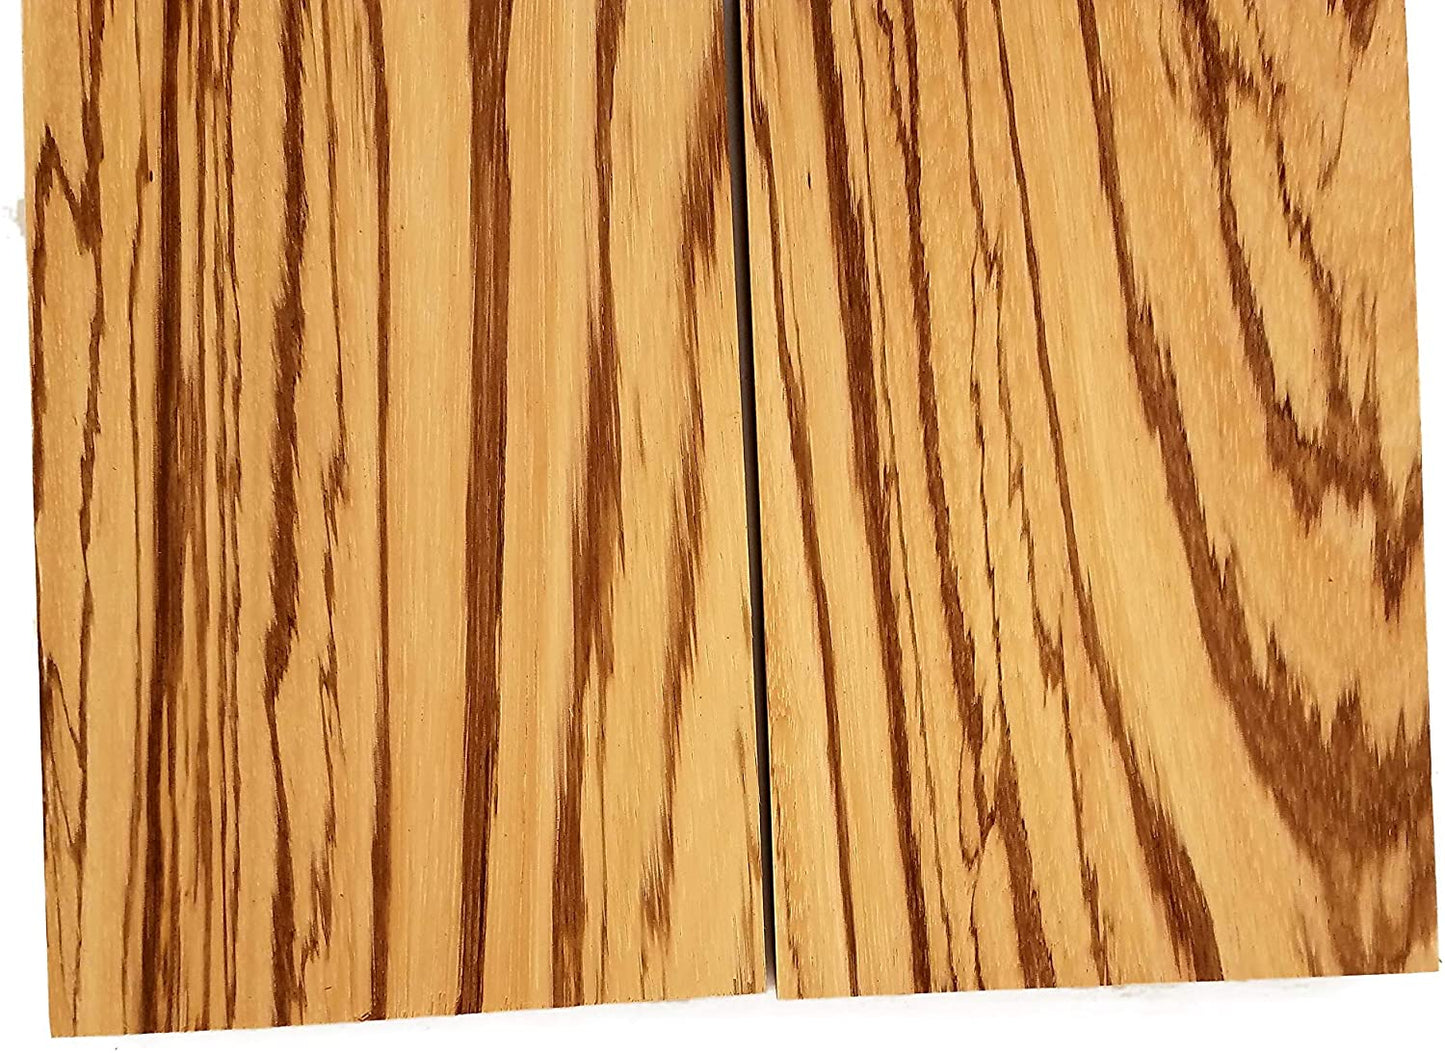 Zebrawood Lumber Board - 3/4" x 6" (2 Pcs)